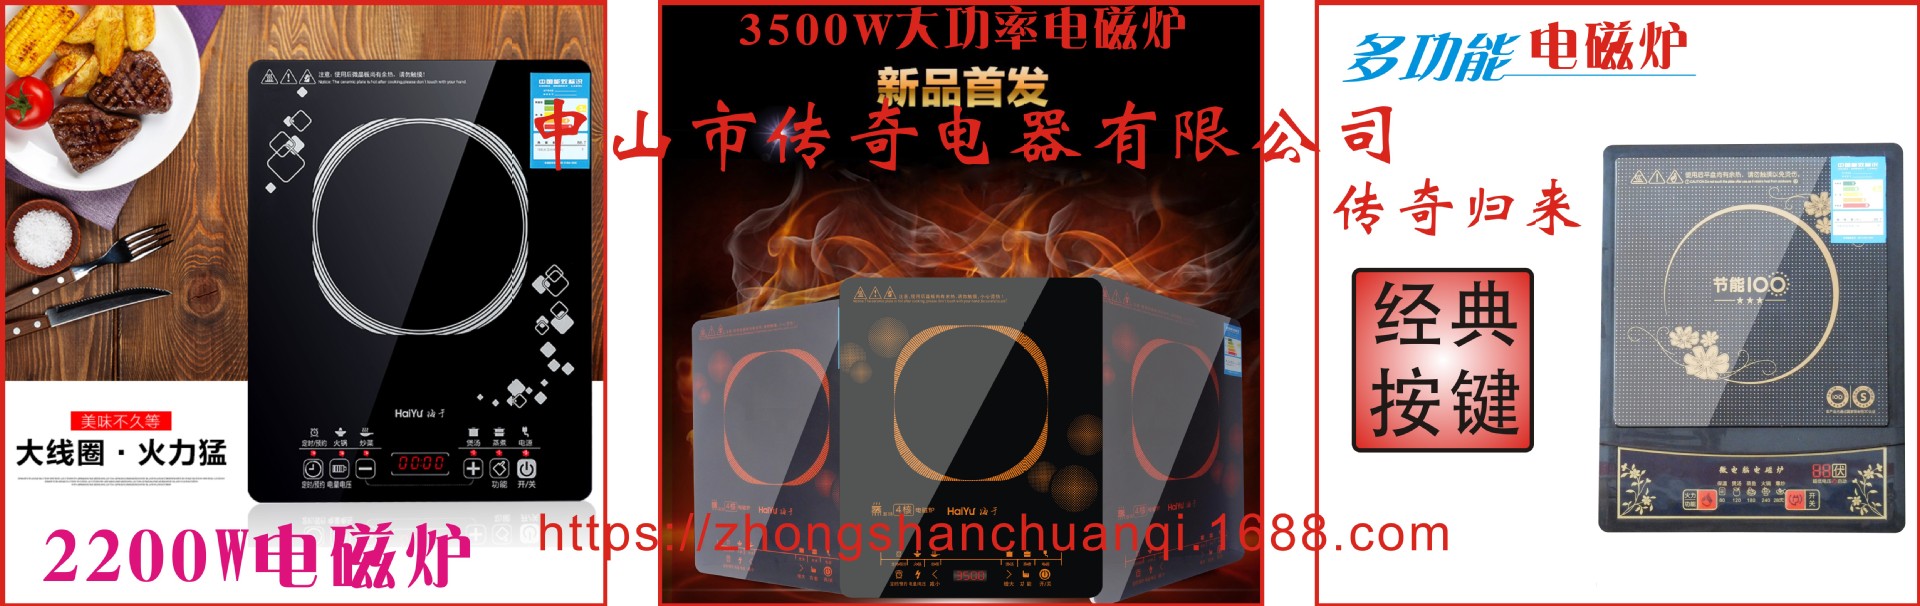 厂家直销商用5000W大功率电磁炉特价台式家用炒菜凹平面电池炉